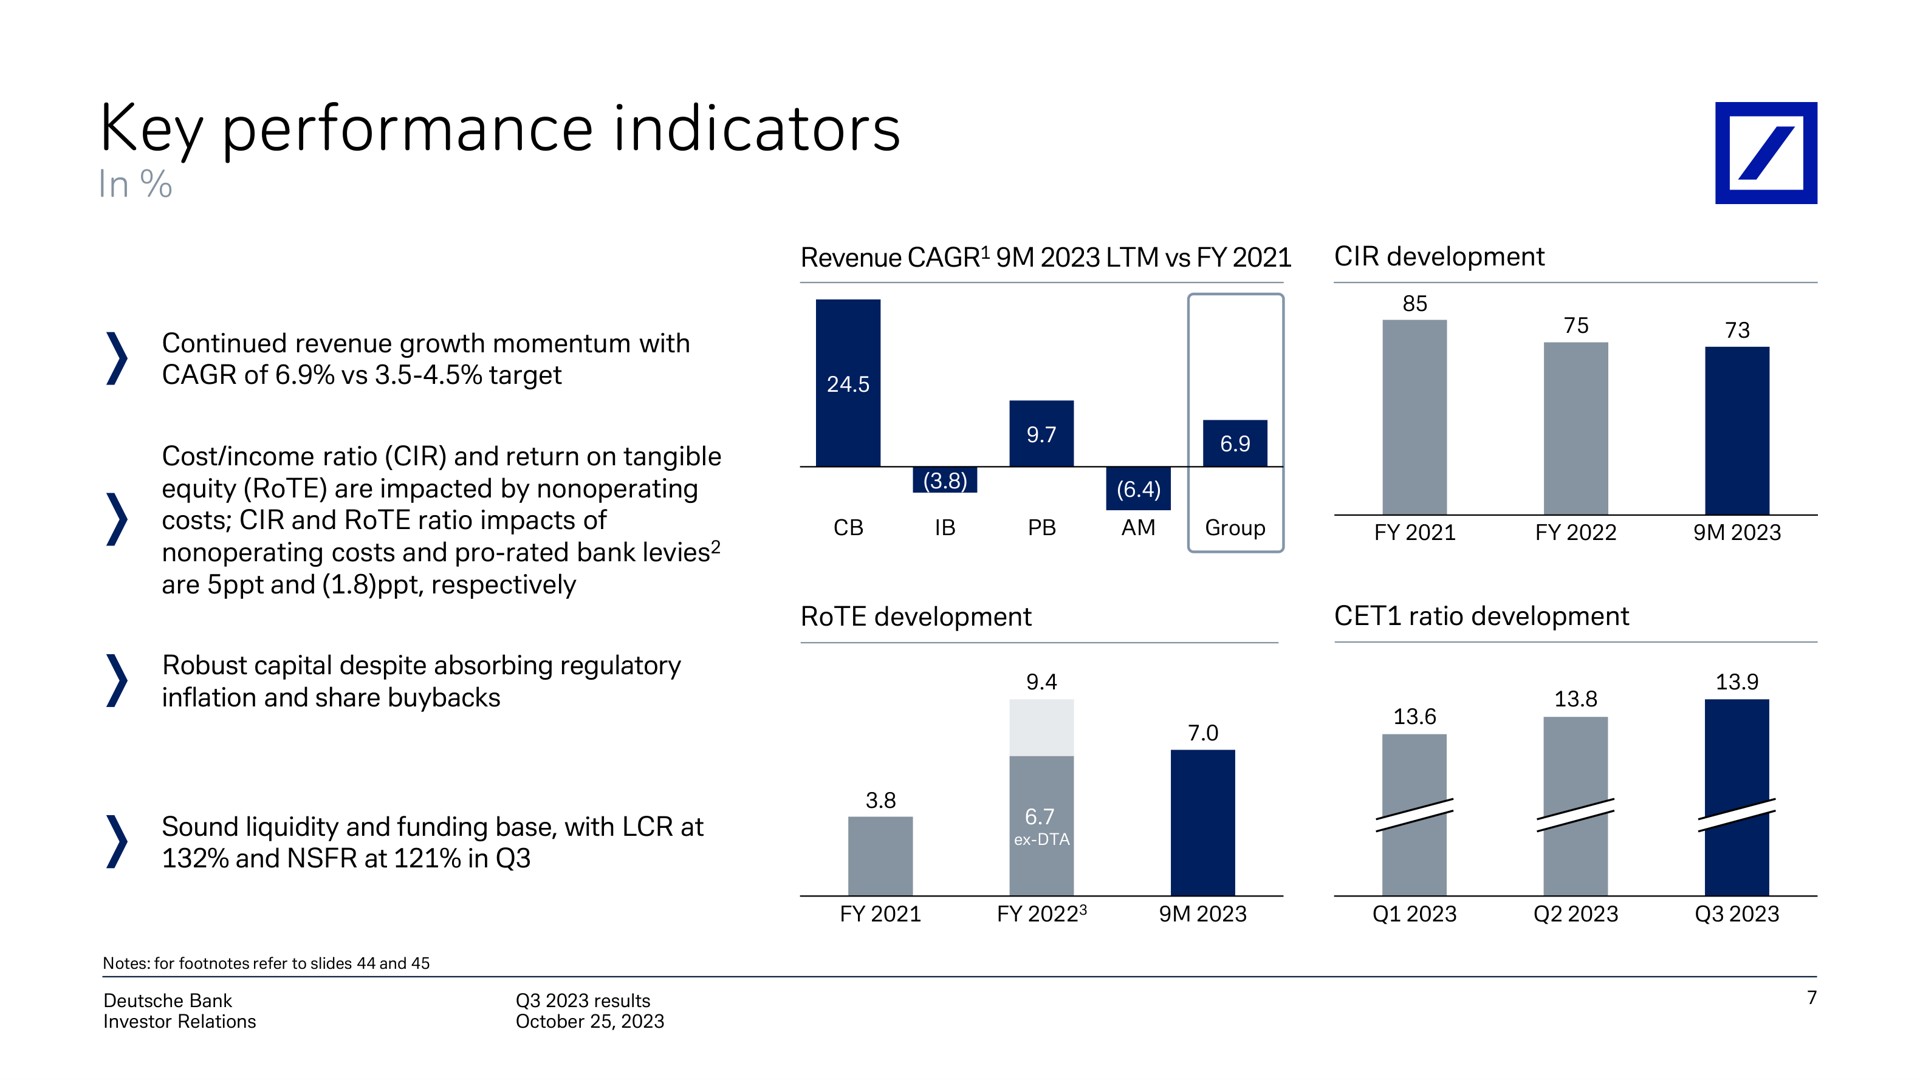 key performance indicators in | Deutsche Bank